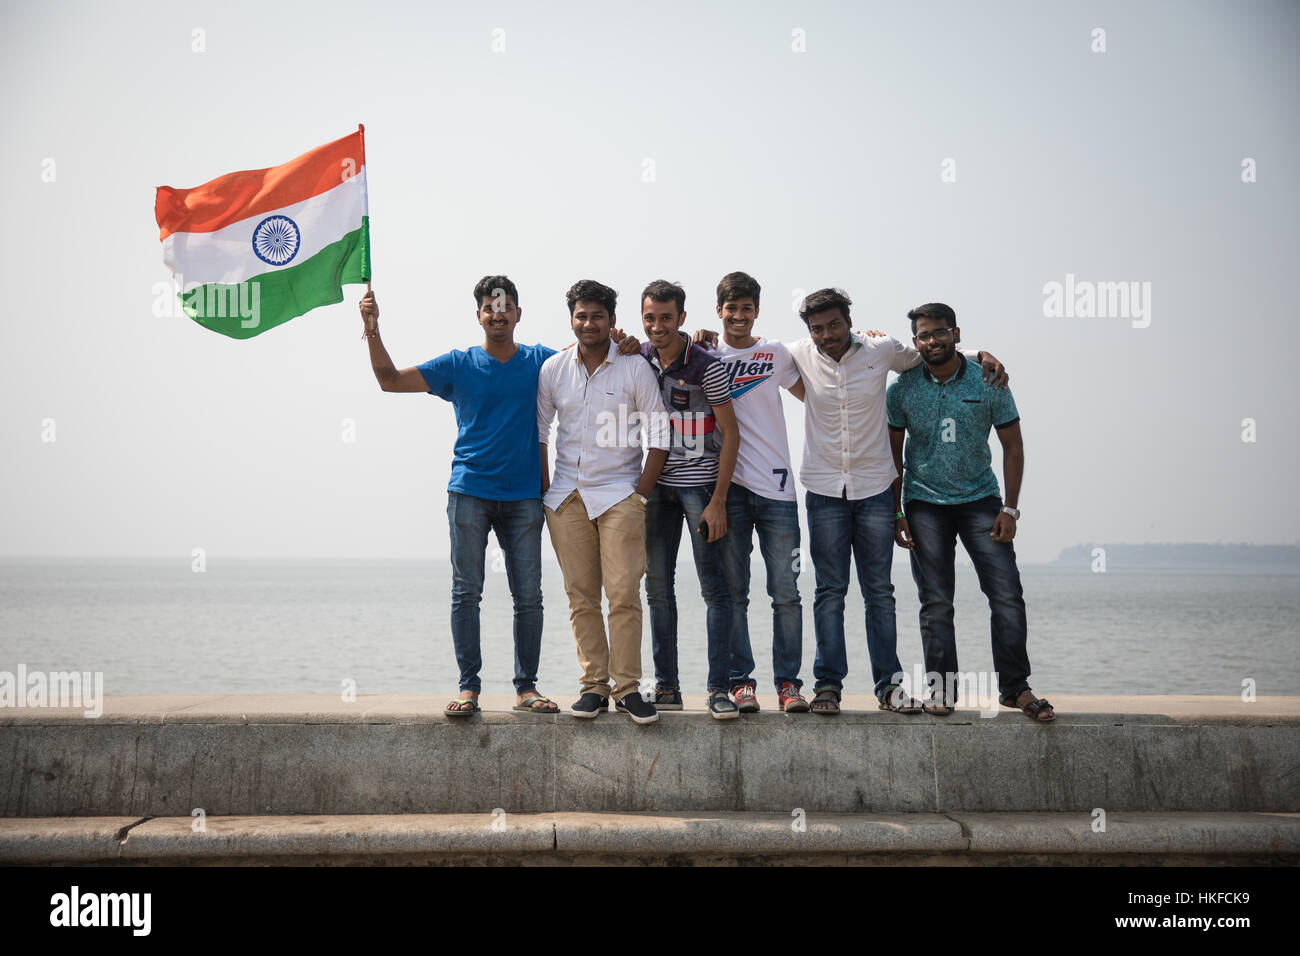 Les gens célèbrent la Journée de la République sur Marine Drive, à Mumbai (Bombay), Inde. Banque D'Images